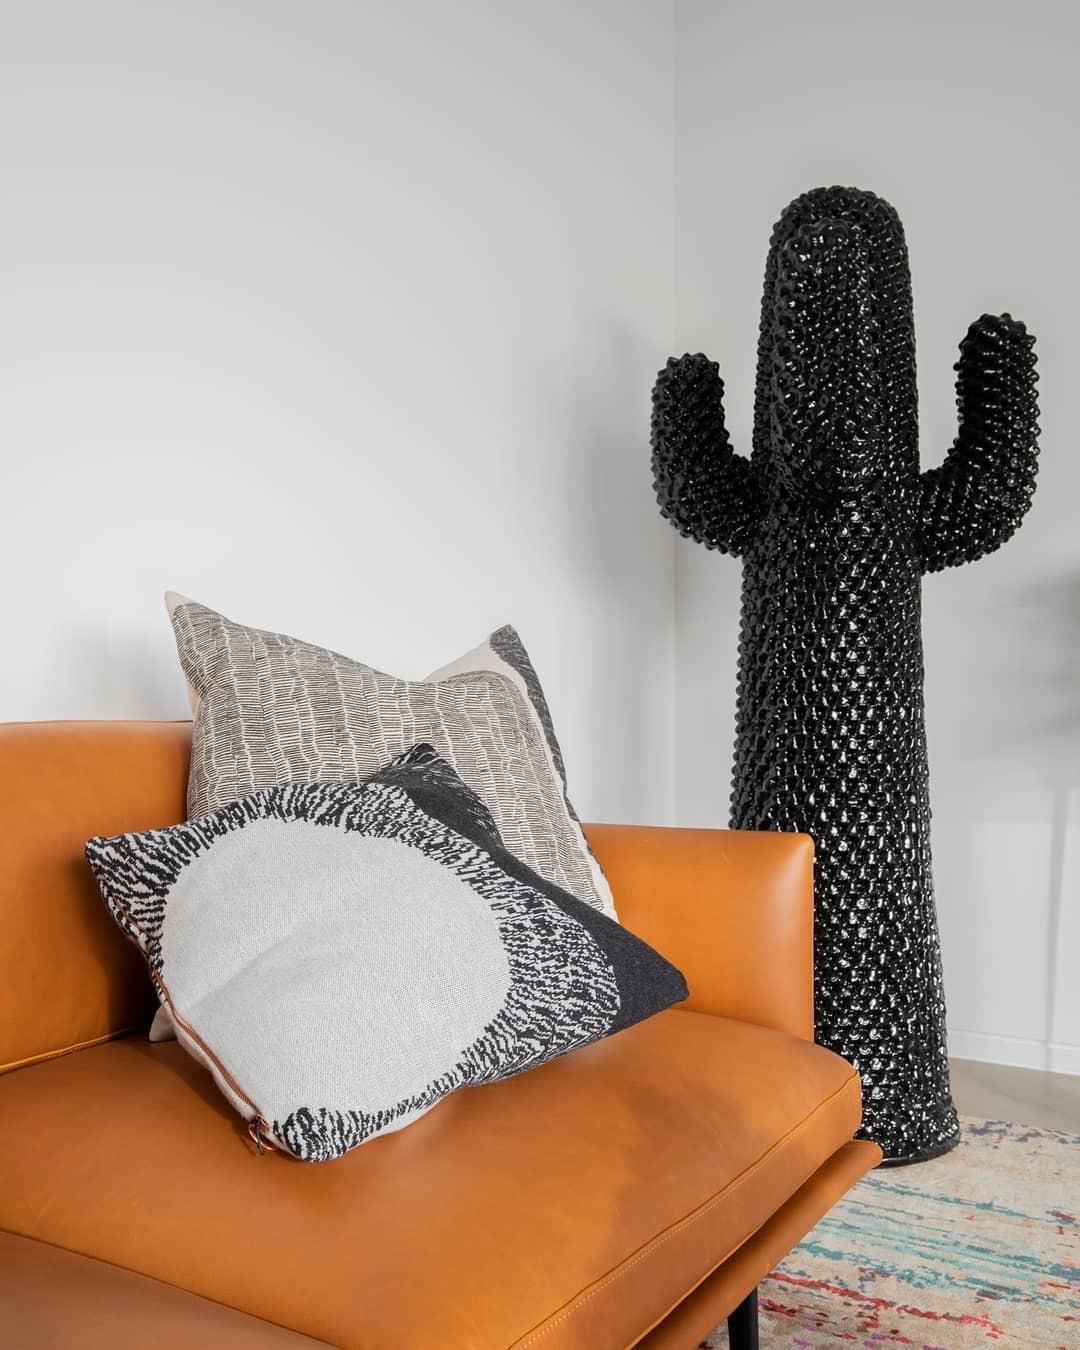 Né en 1972, le porte-manteau cactus a remis en question le monde statique et rigide de la décoration d'intérieur dès sa création, révolutionnant le paysage du mobilier traditionnel. Conçu par Guido Drocco et Franco Mello, le porte-manteau Cactus est